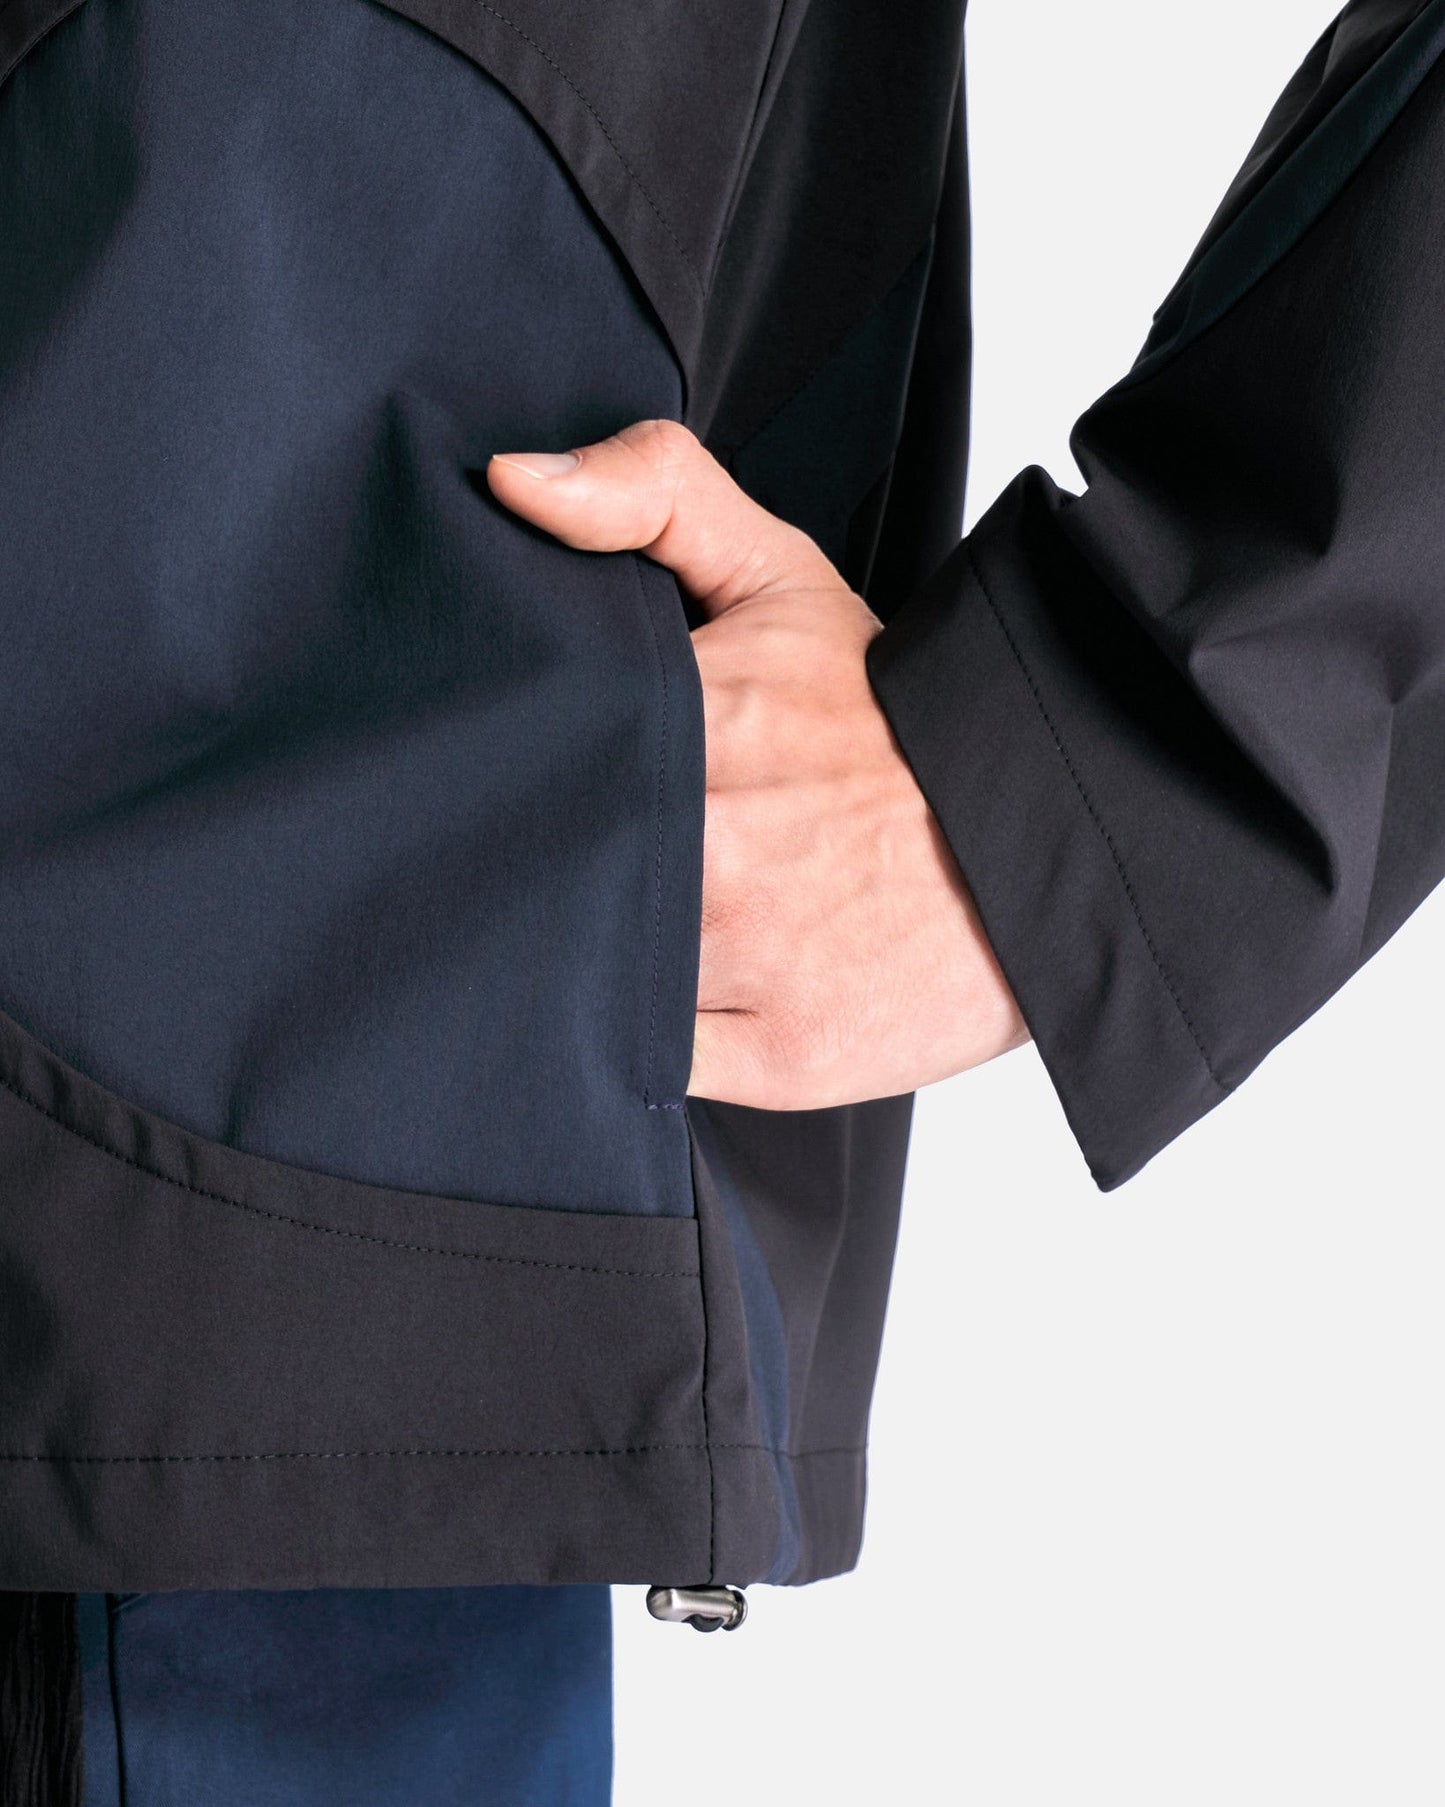 CMMAWEAR Men's Jackets Akaza 3-Layer Jacket in Black/Navy